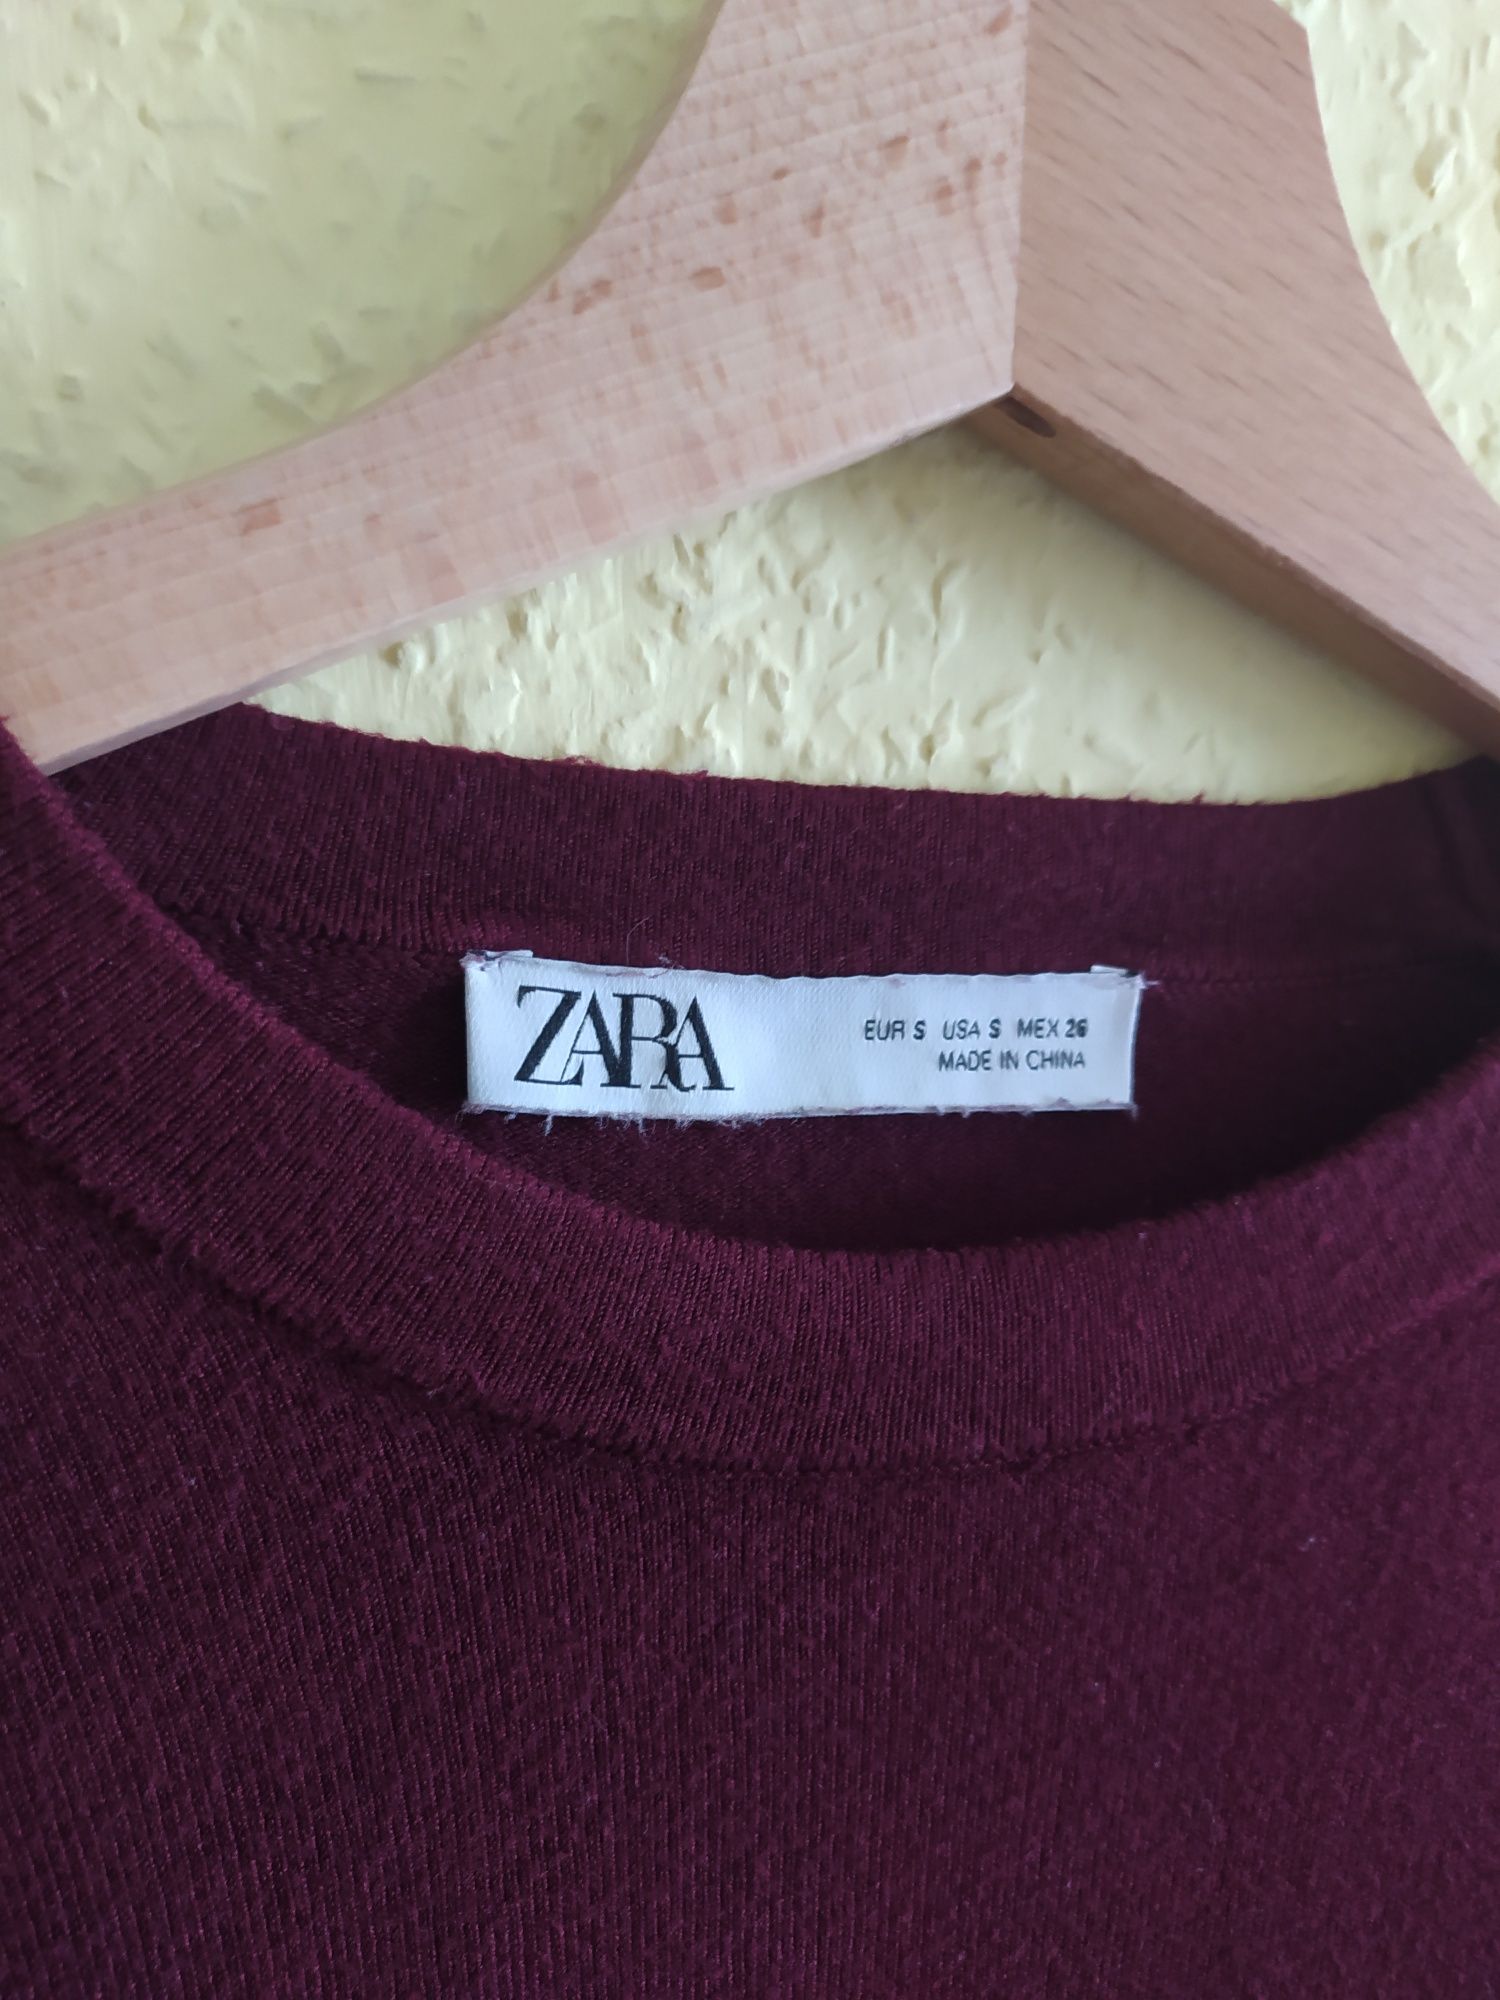 Cienki sweterek ZARA bordowy kolor, ozdobne rękawy S / M